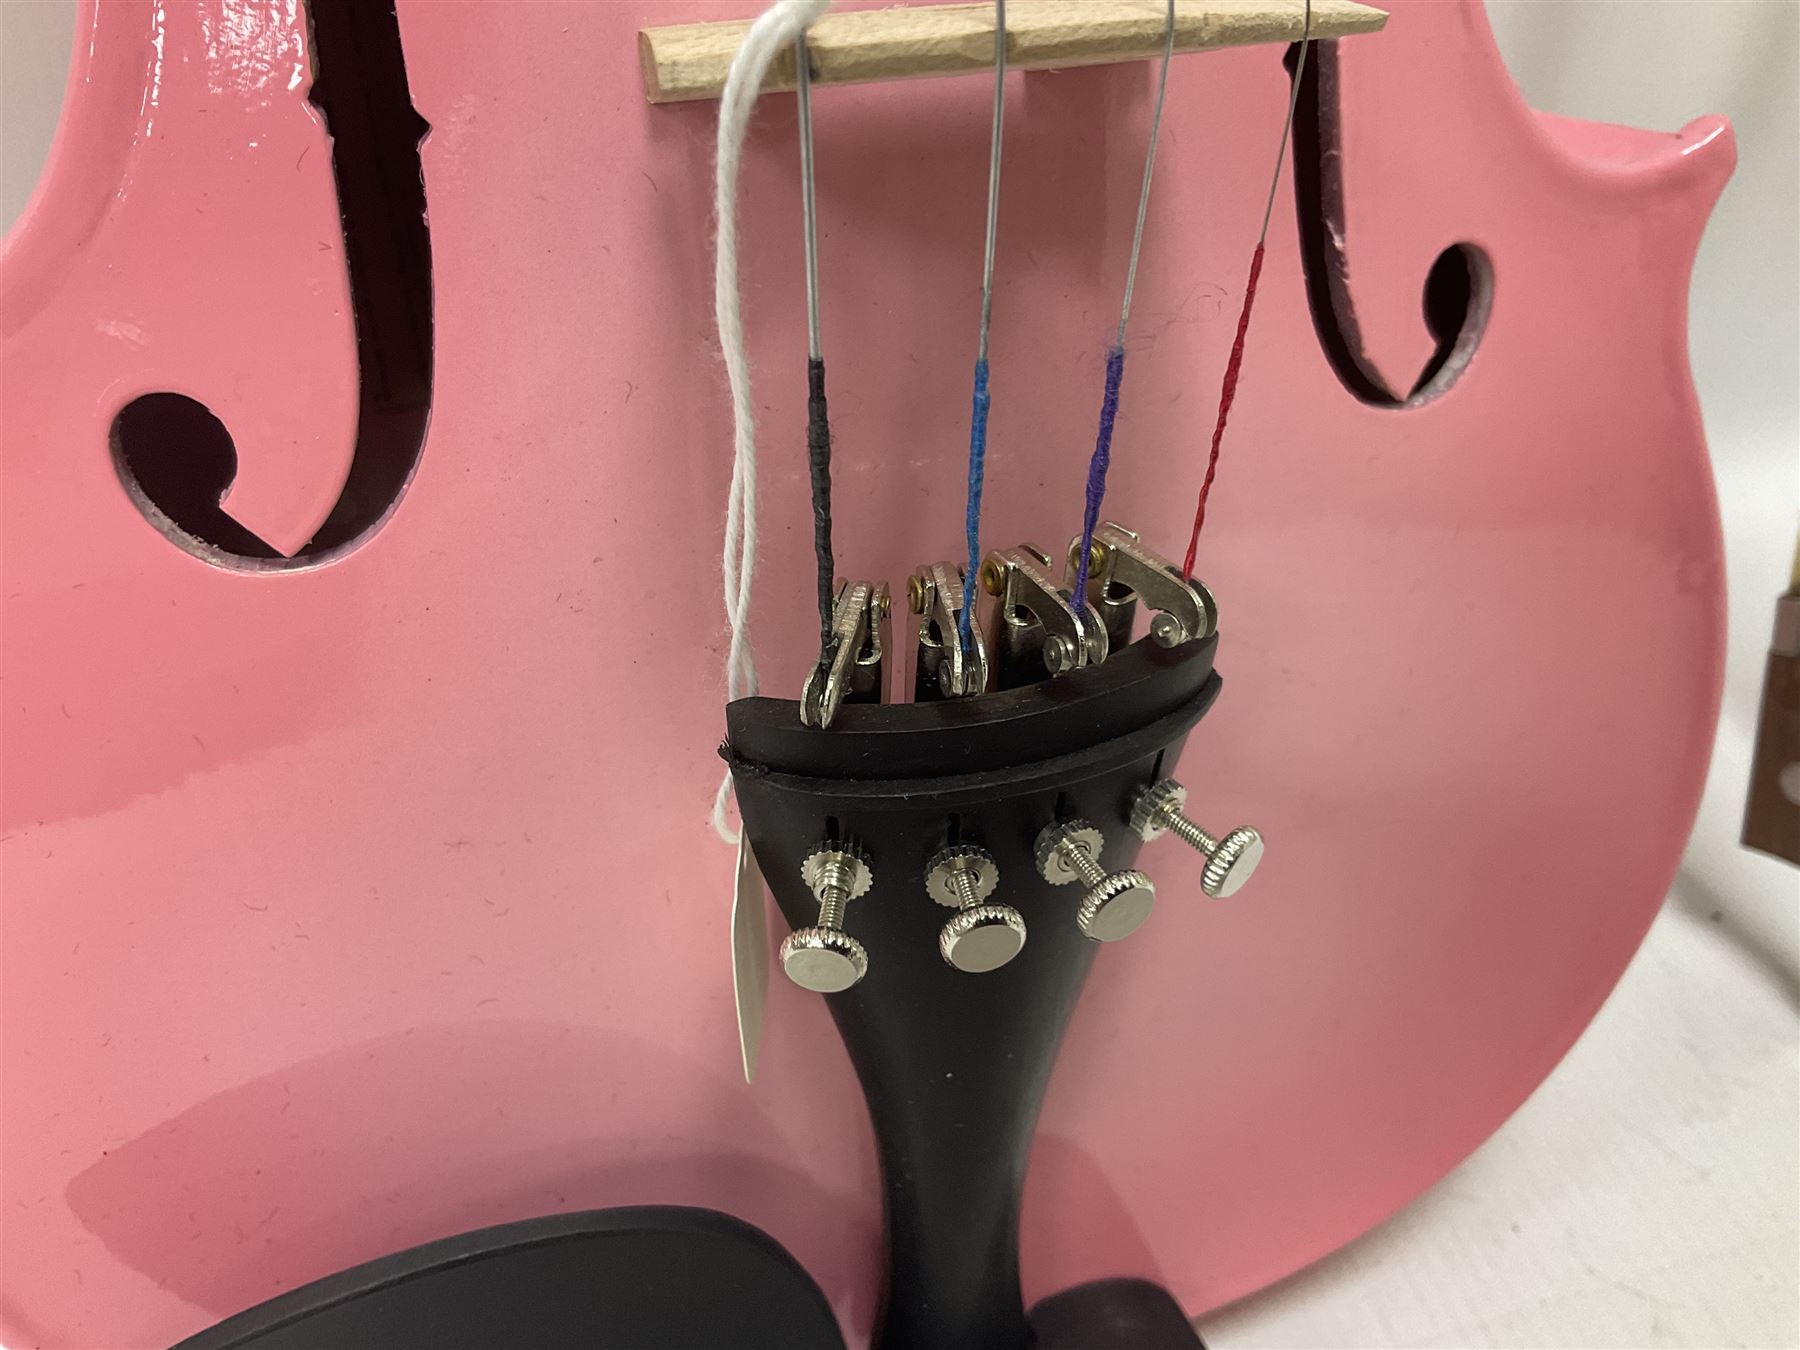 Zest full size pink violin - Image 6 of 32